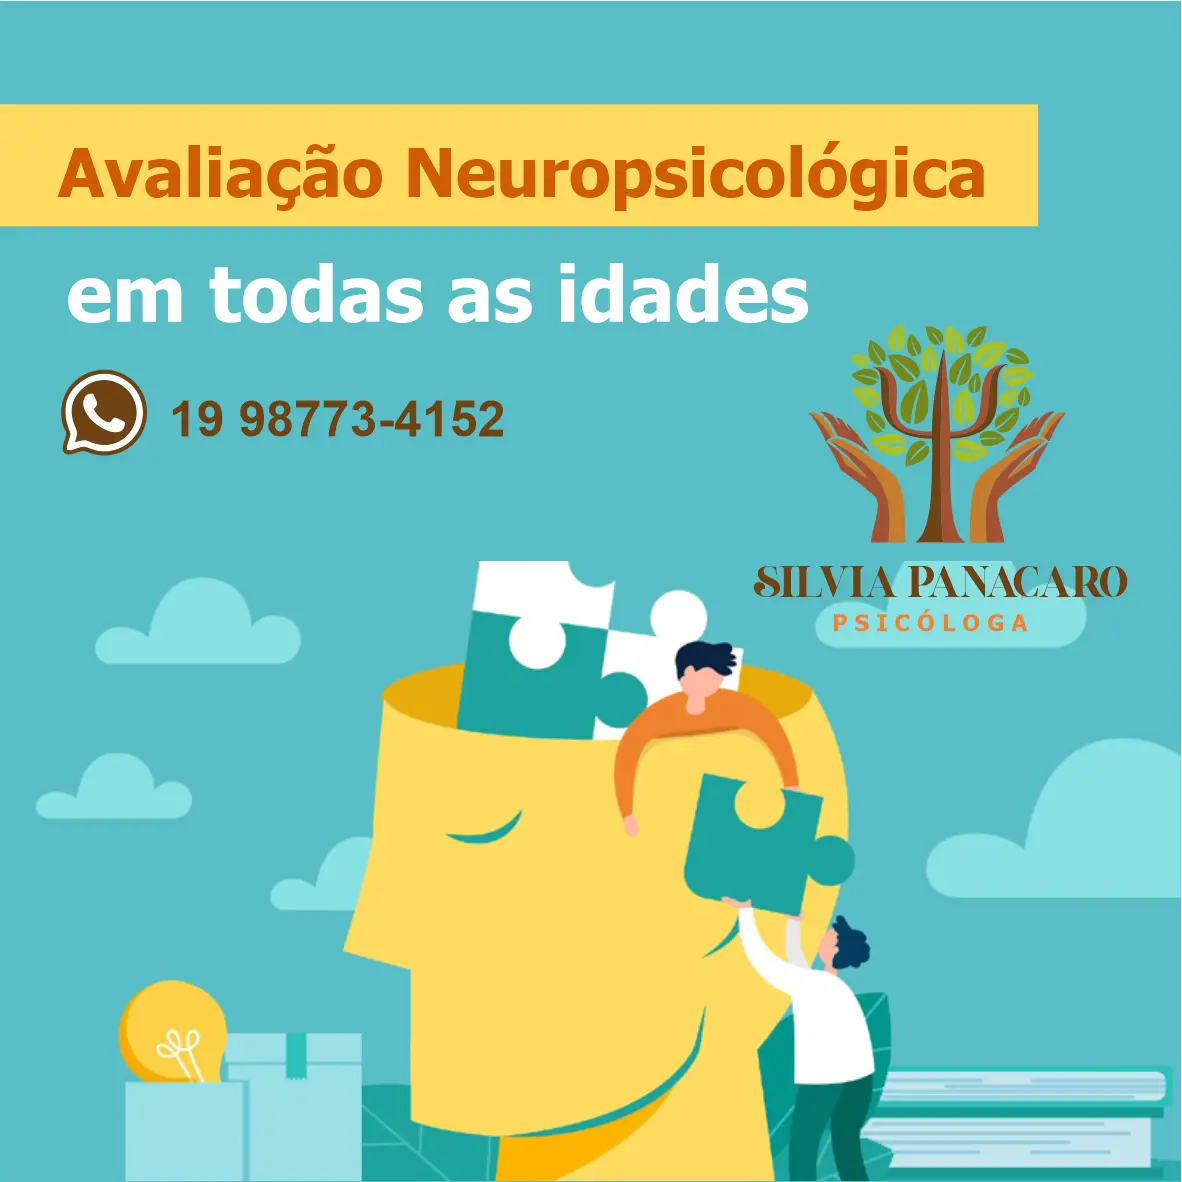 
Propaganda sobre Avaliação Neuropsicológica feita para Psicóloga



